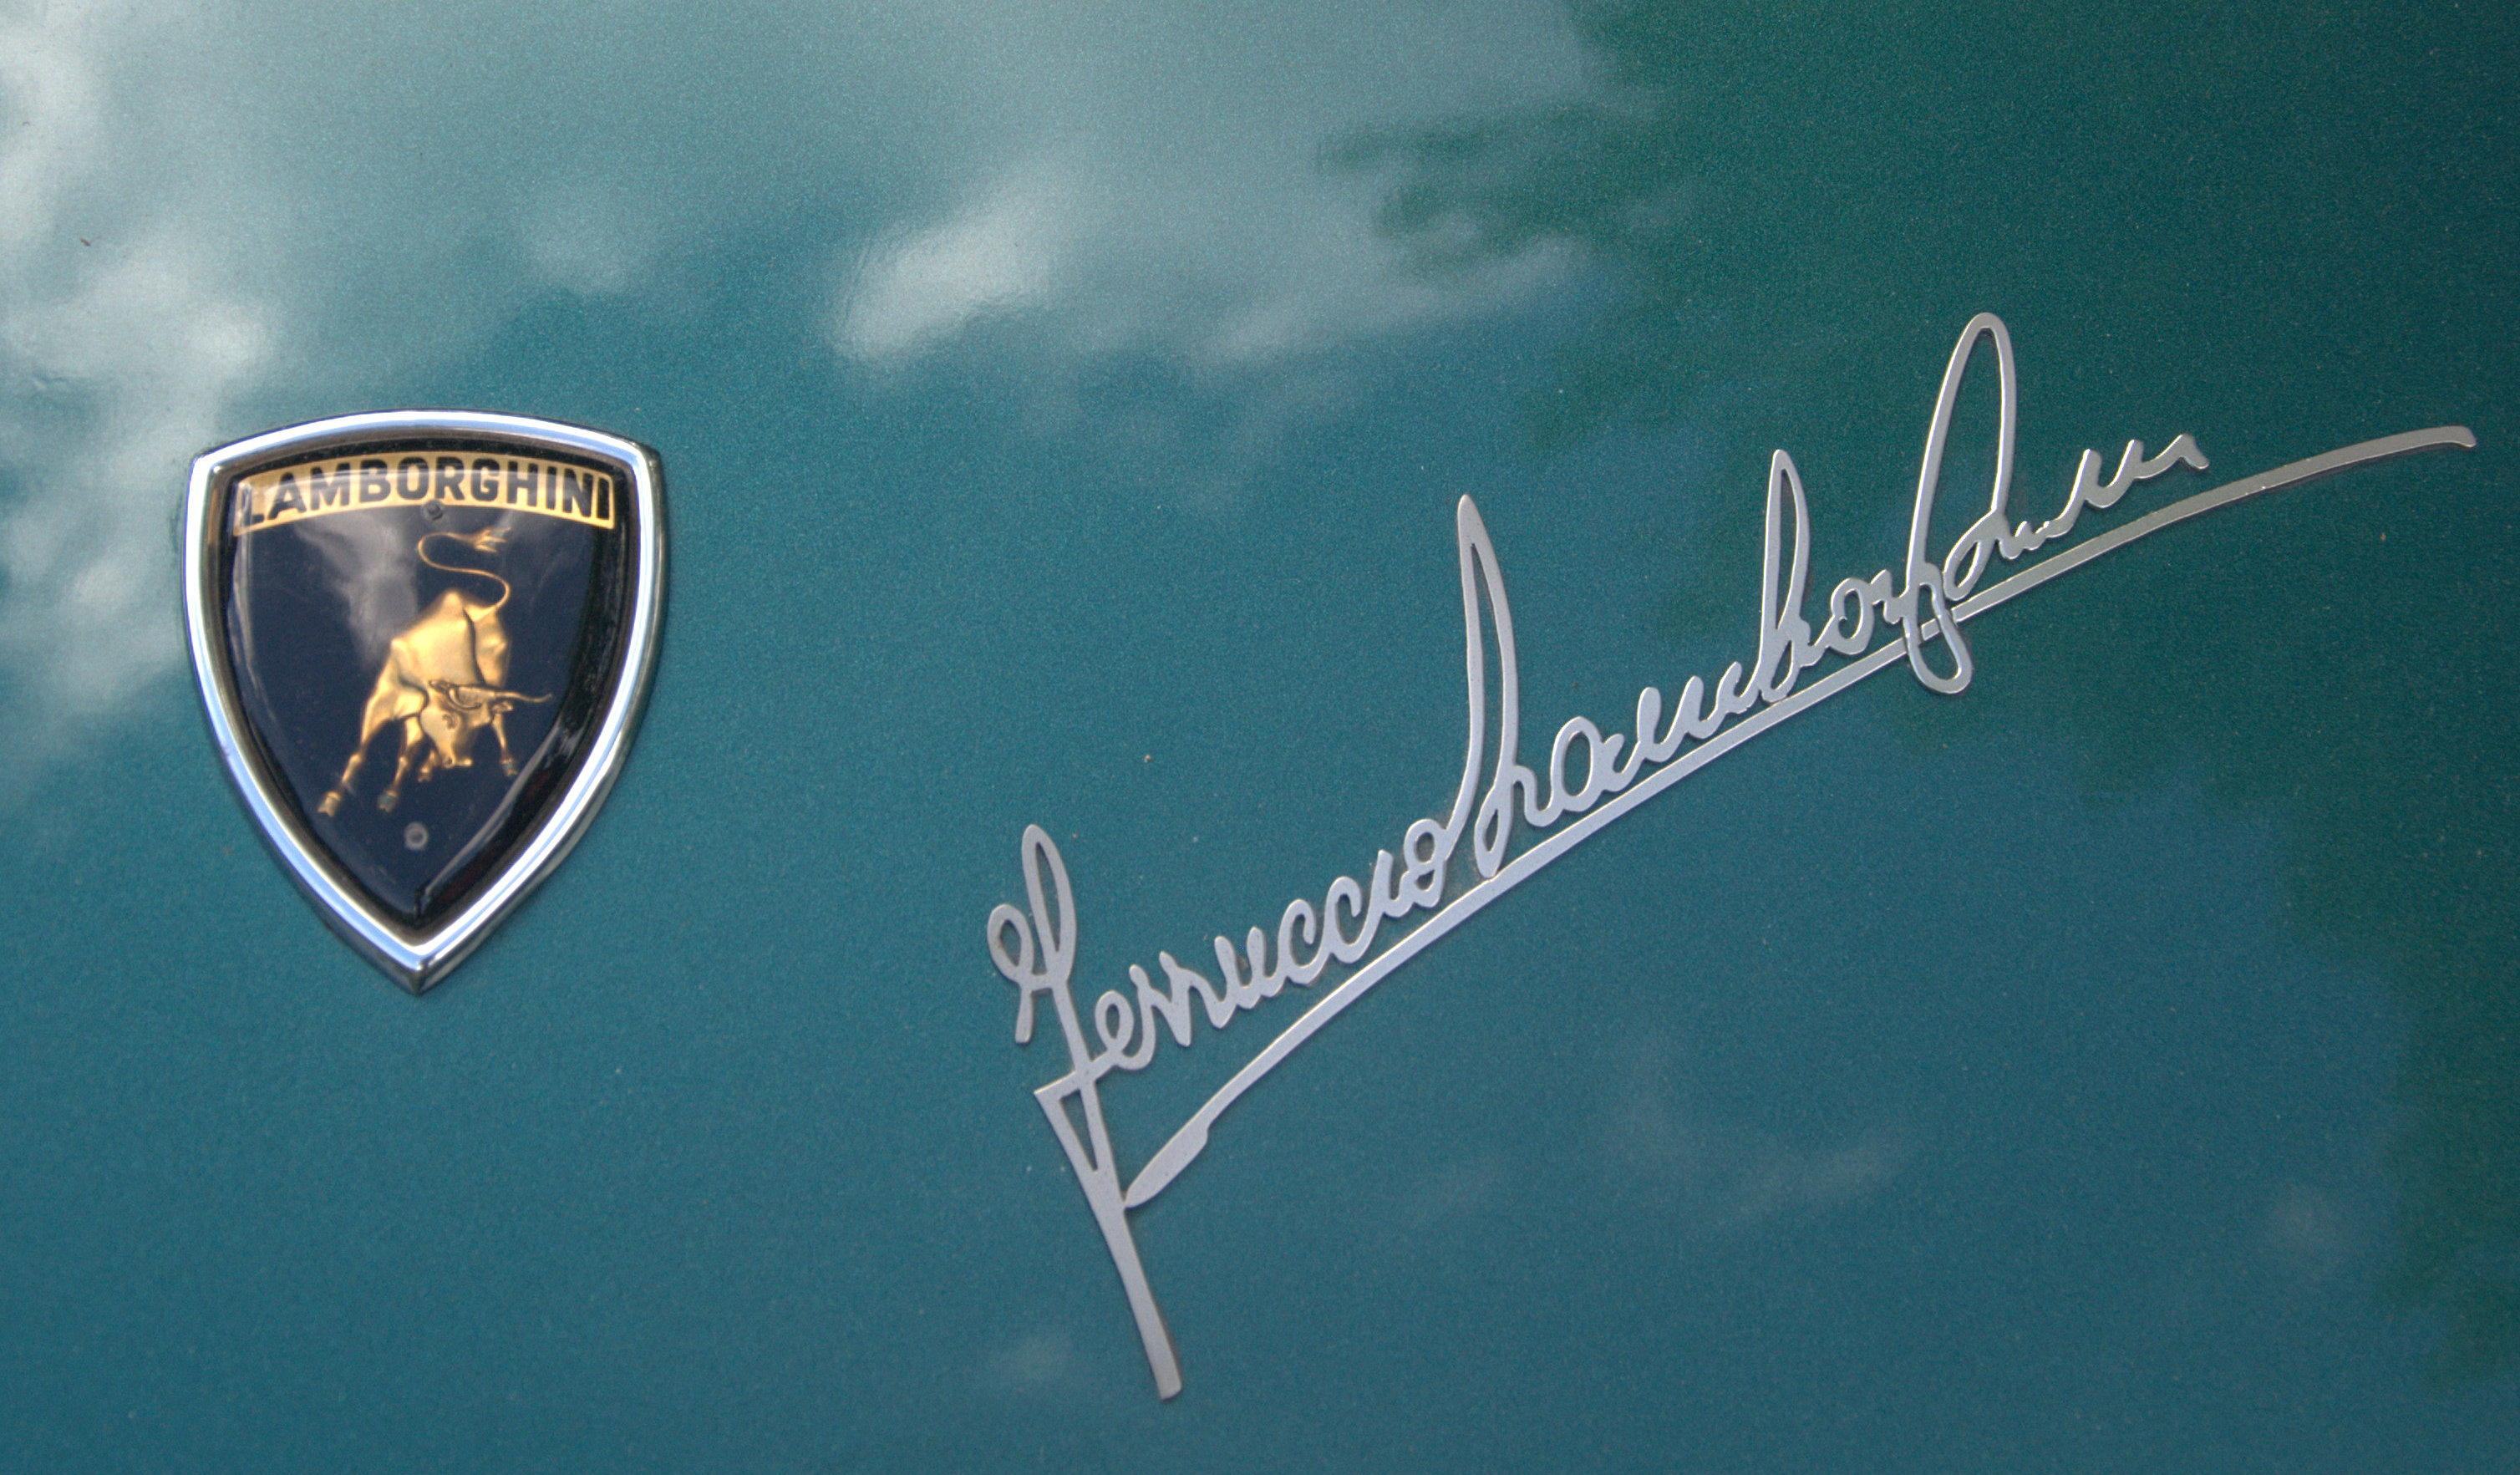 Scudetto originale della Lamborghini. 